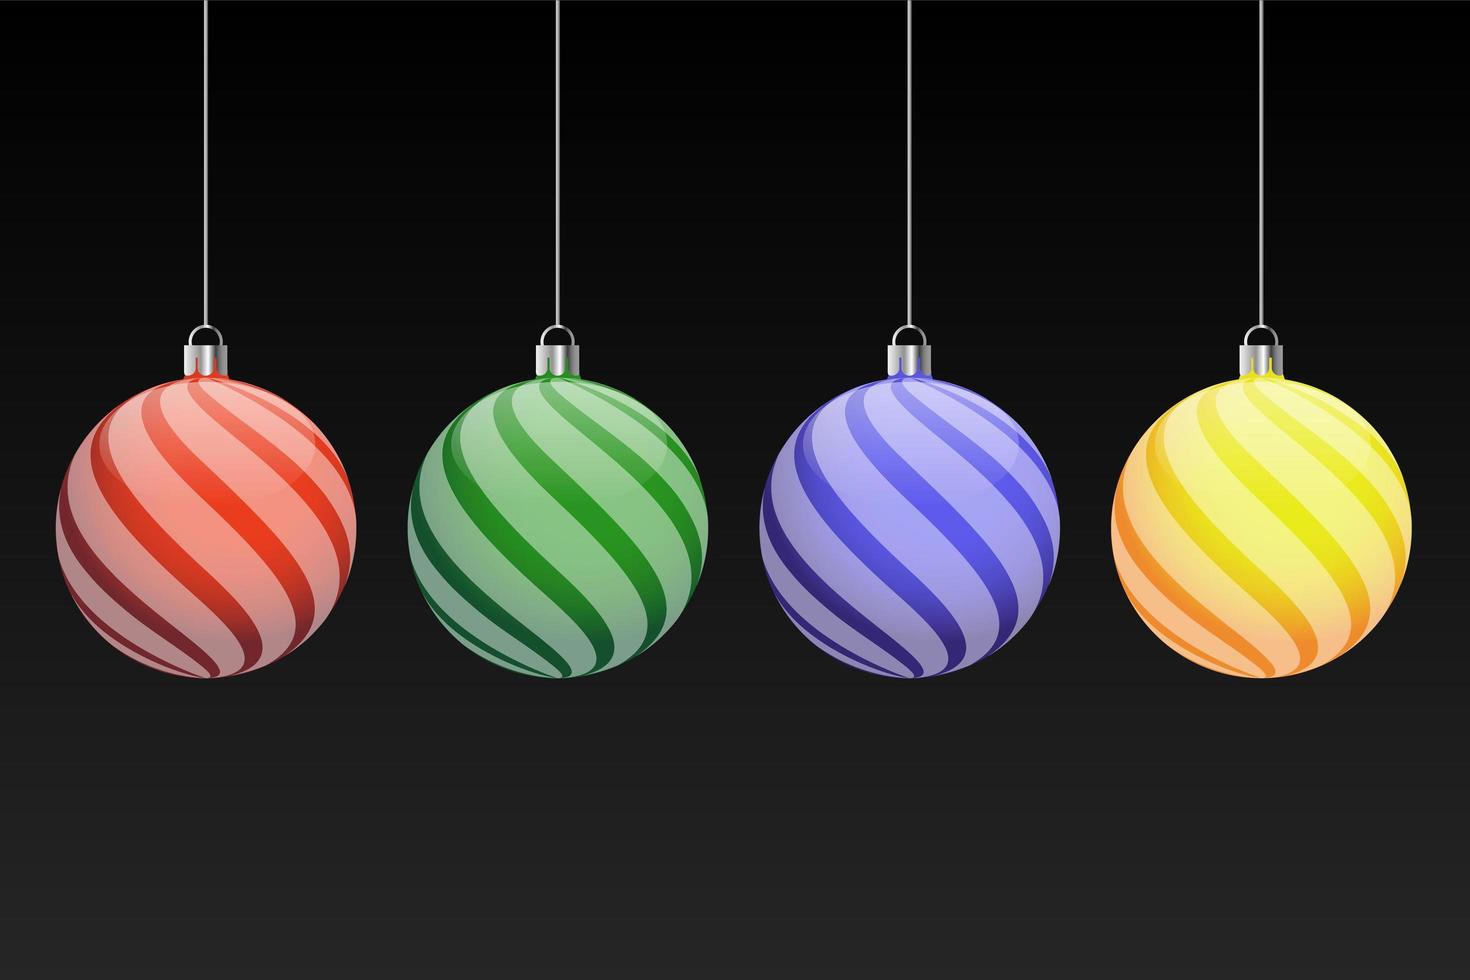 quattro palle di Natale di illuminazione - set vettoriale